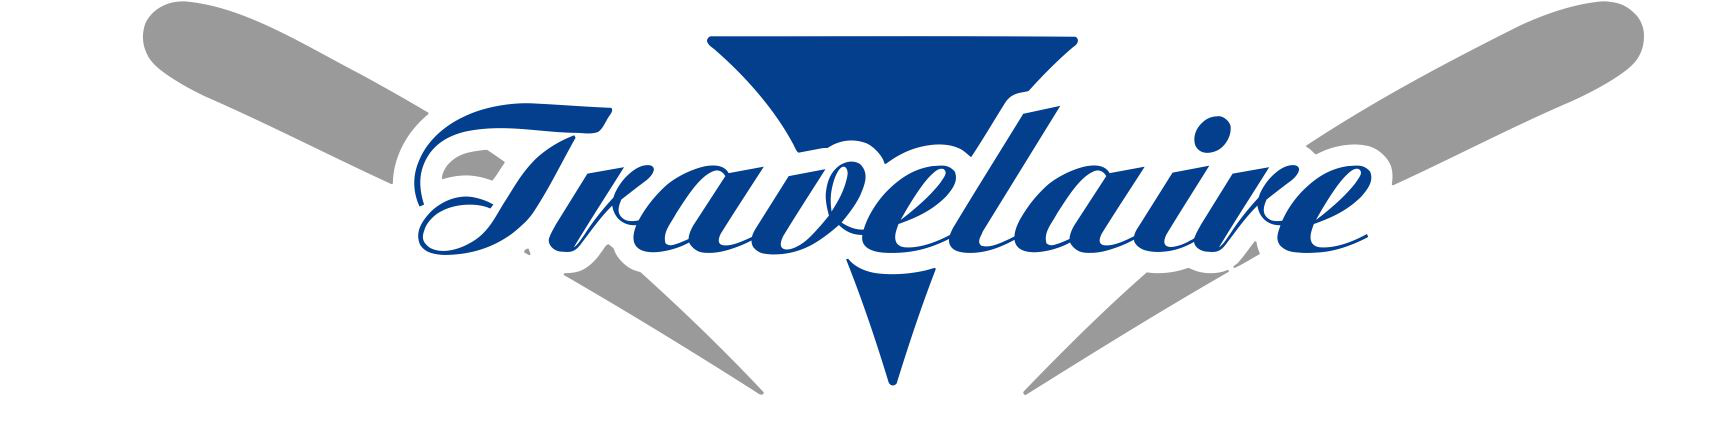 travelaire logo